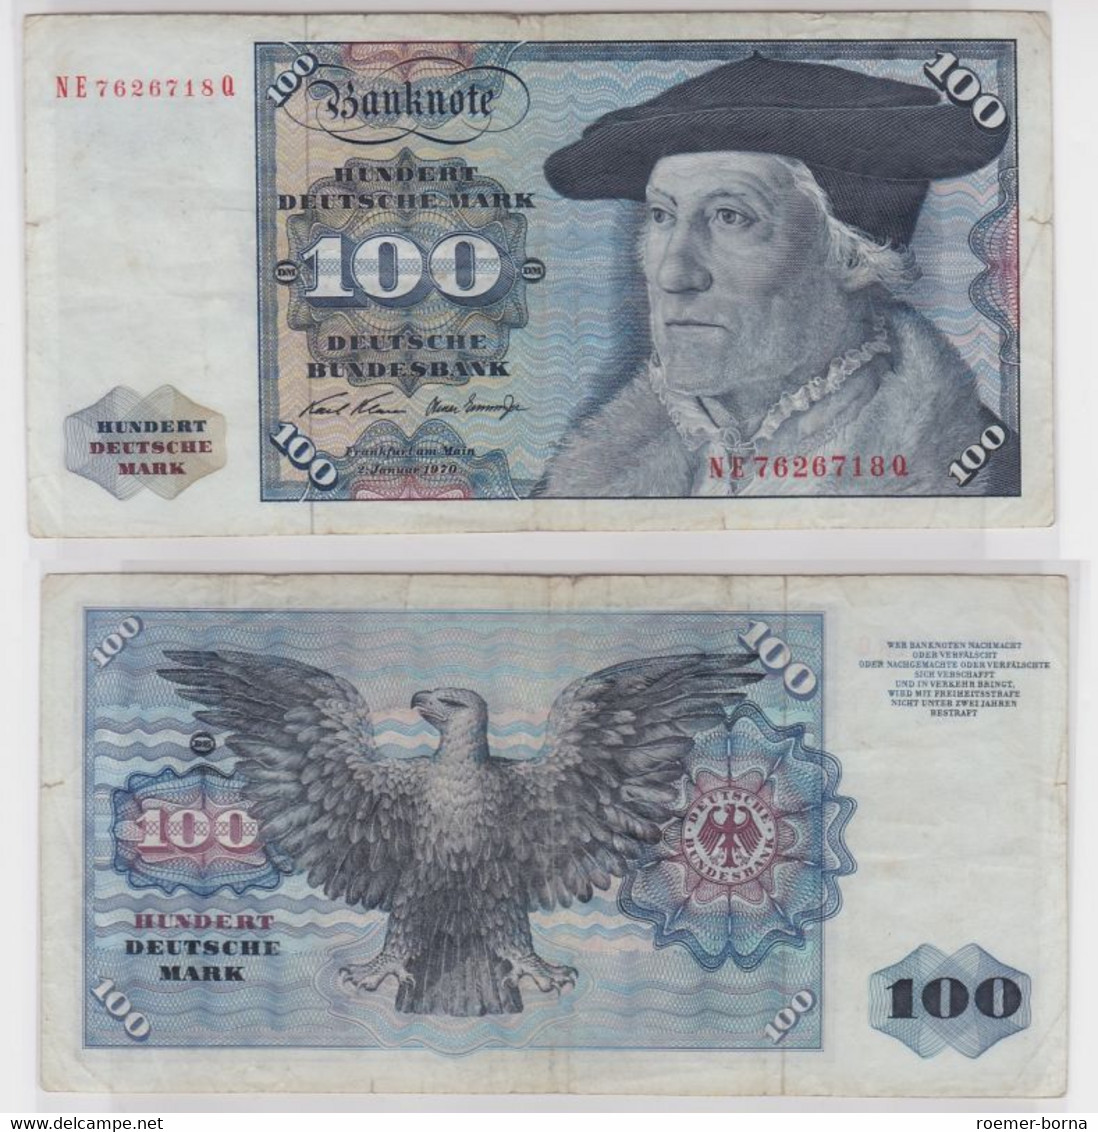 T147133 Banknote 100 DM Deutsche Mark Ro. 273b Schein 2.Jan 1970 KN NE 7626718 Q - 100 Deutsche Mark